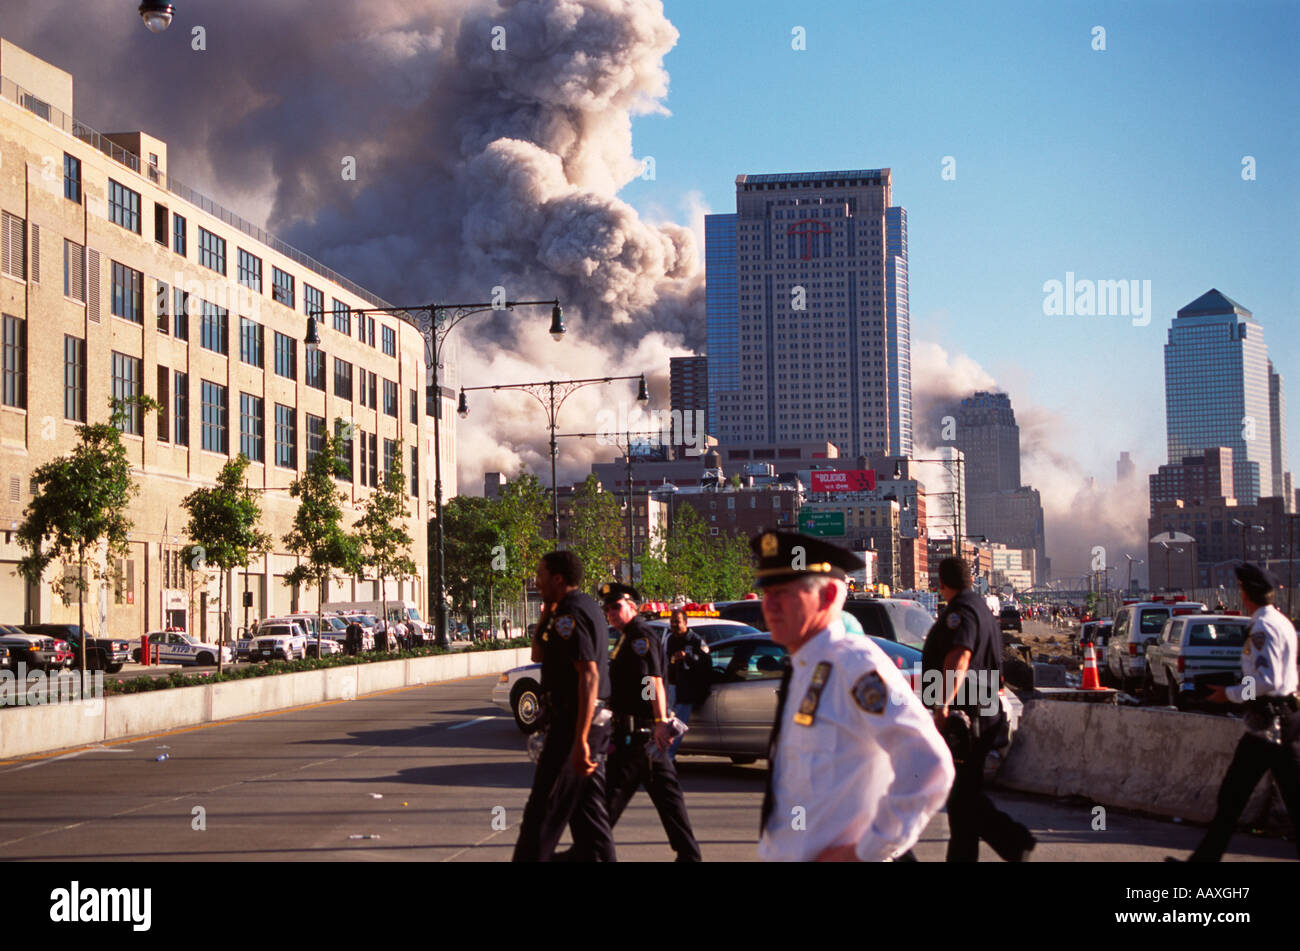 L'effondrement du WTC 7 building le 11 septembre vu de la west side highway dans NYC. Banque D'Images